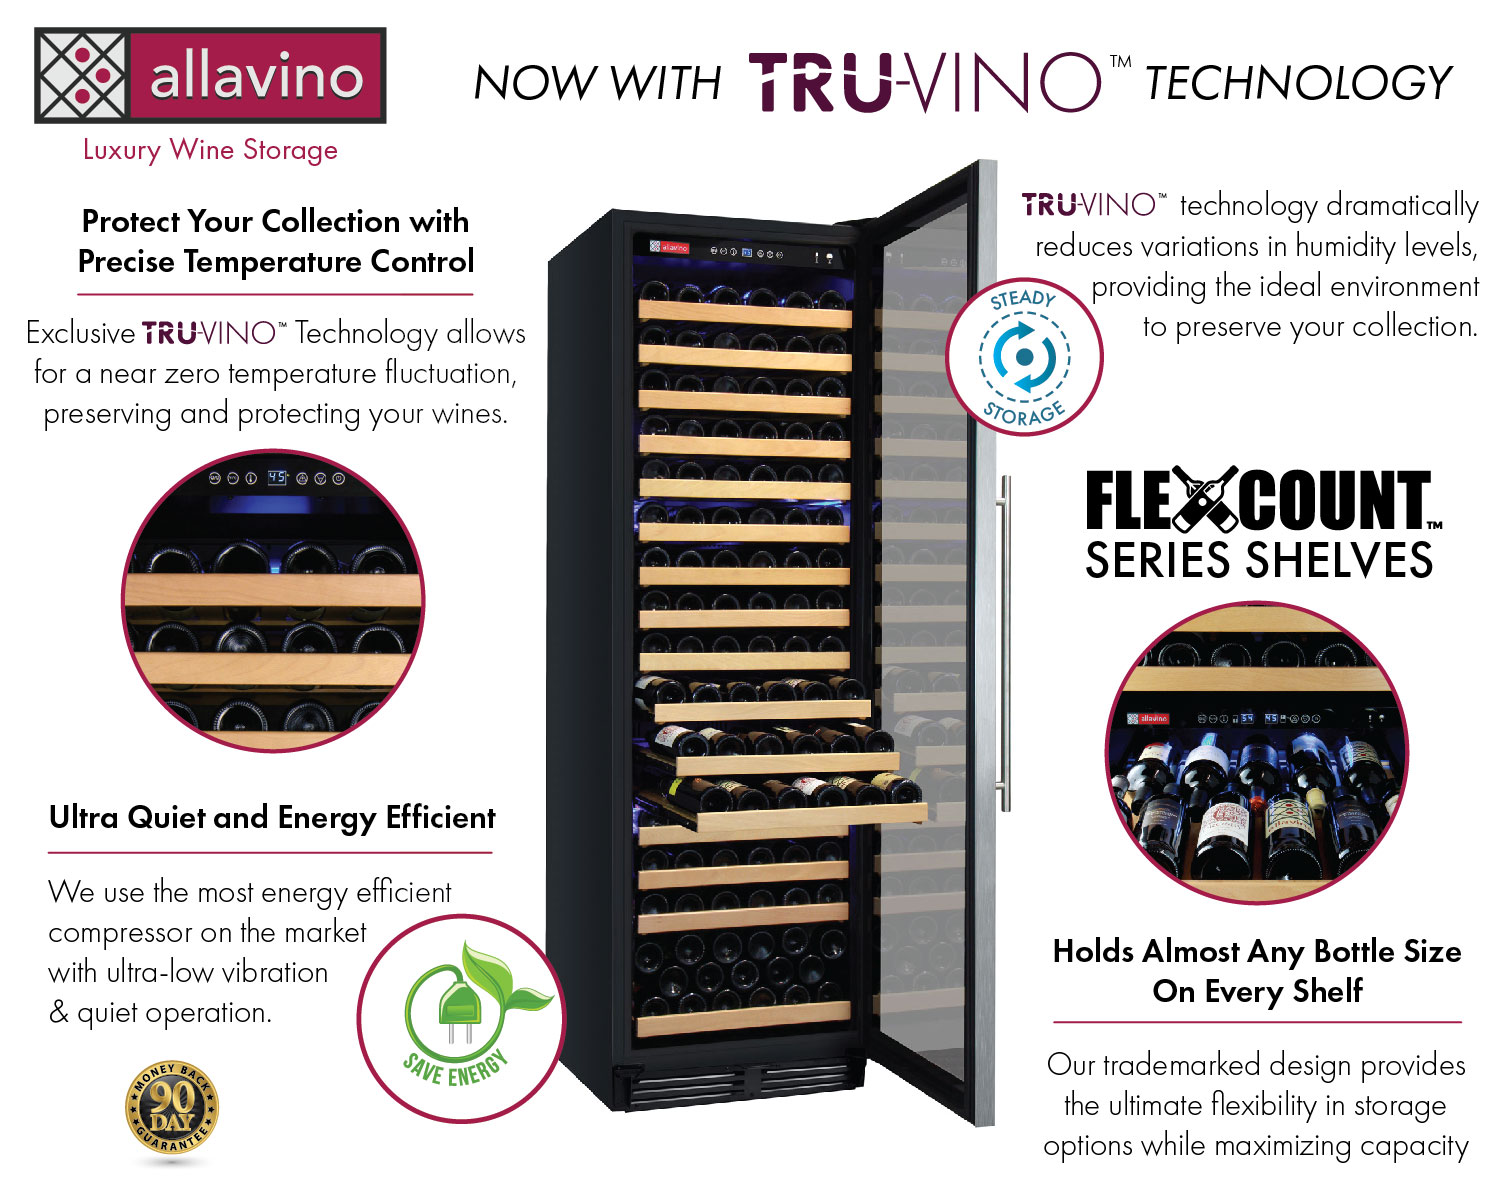 Allavino YHWR174-1SR20 Wine Refrigerator Features